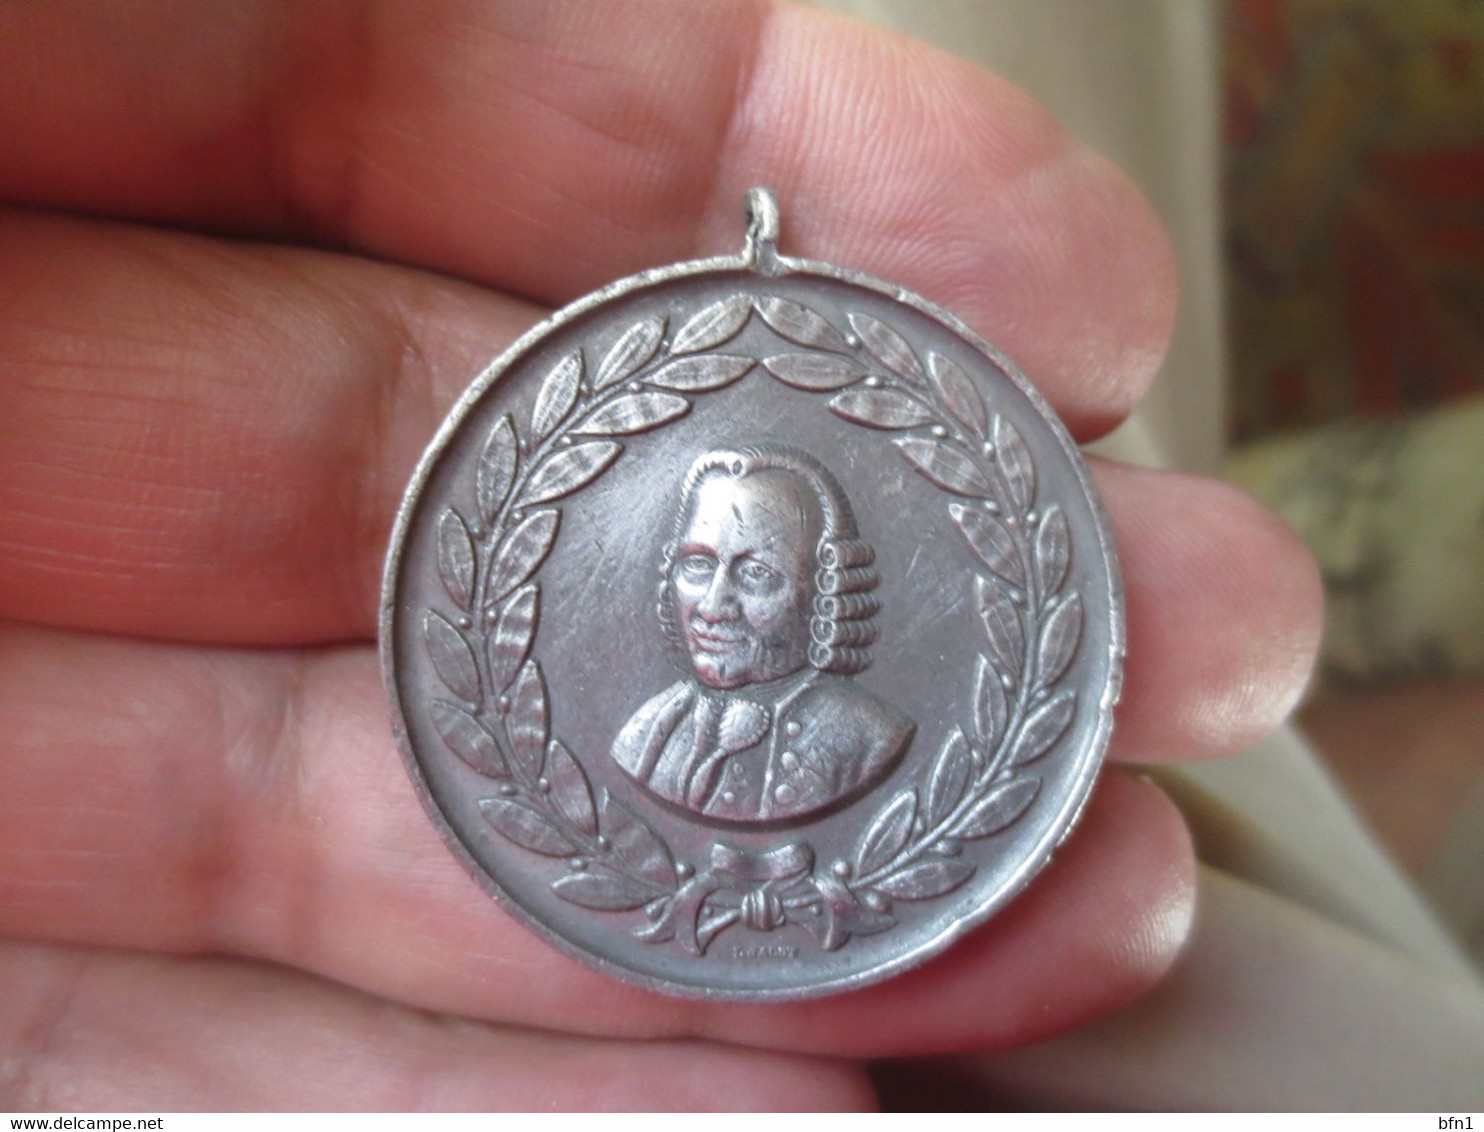 Medaille JEAN RICHARD Dit BRESSEL - NE EN 1665 MORT EN 1741 Inauguration DU MONUMENT LE 15 JUILLET 1888 GRAVEUR JACOT - Royaux / De Noblesse